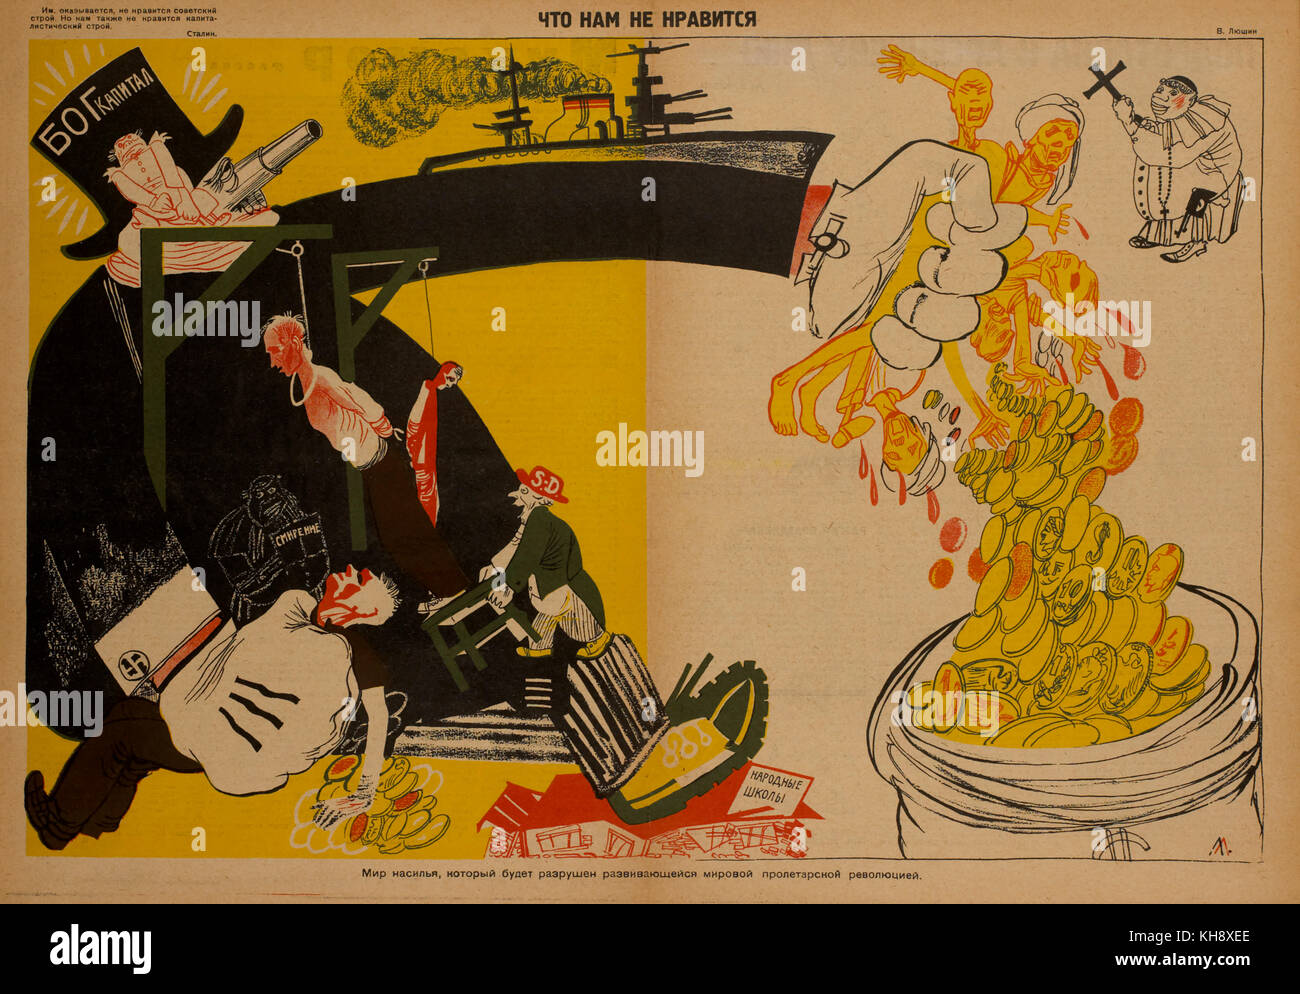 Russo poster di propaganda, " Che cosa non ci piace', bezbozhnik u stanka magazine, illustrazione di v. lyushin, Russia, 1920 Foto Stock